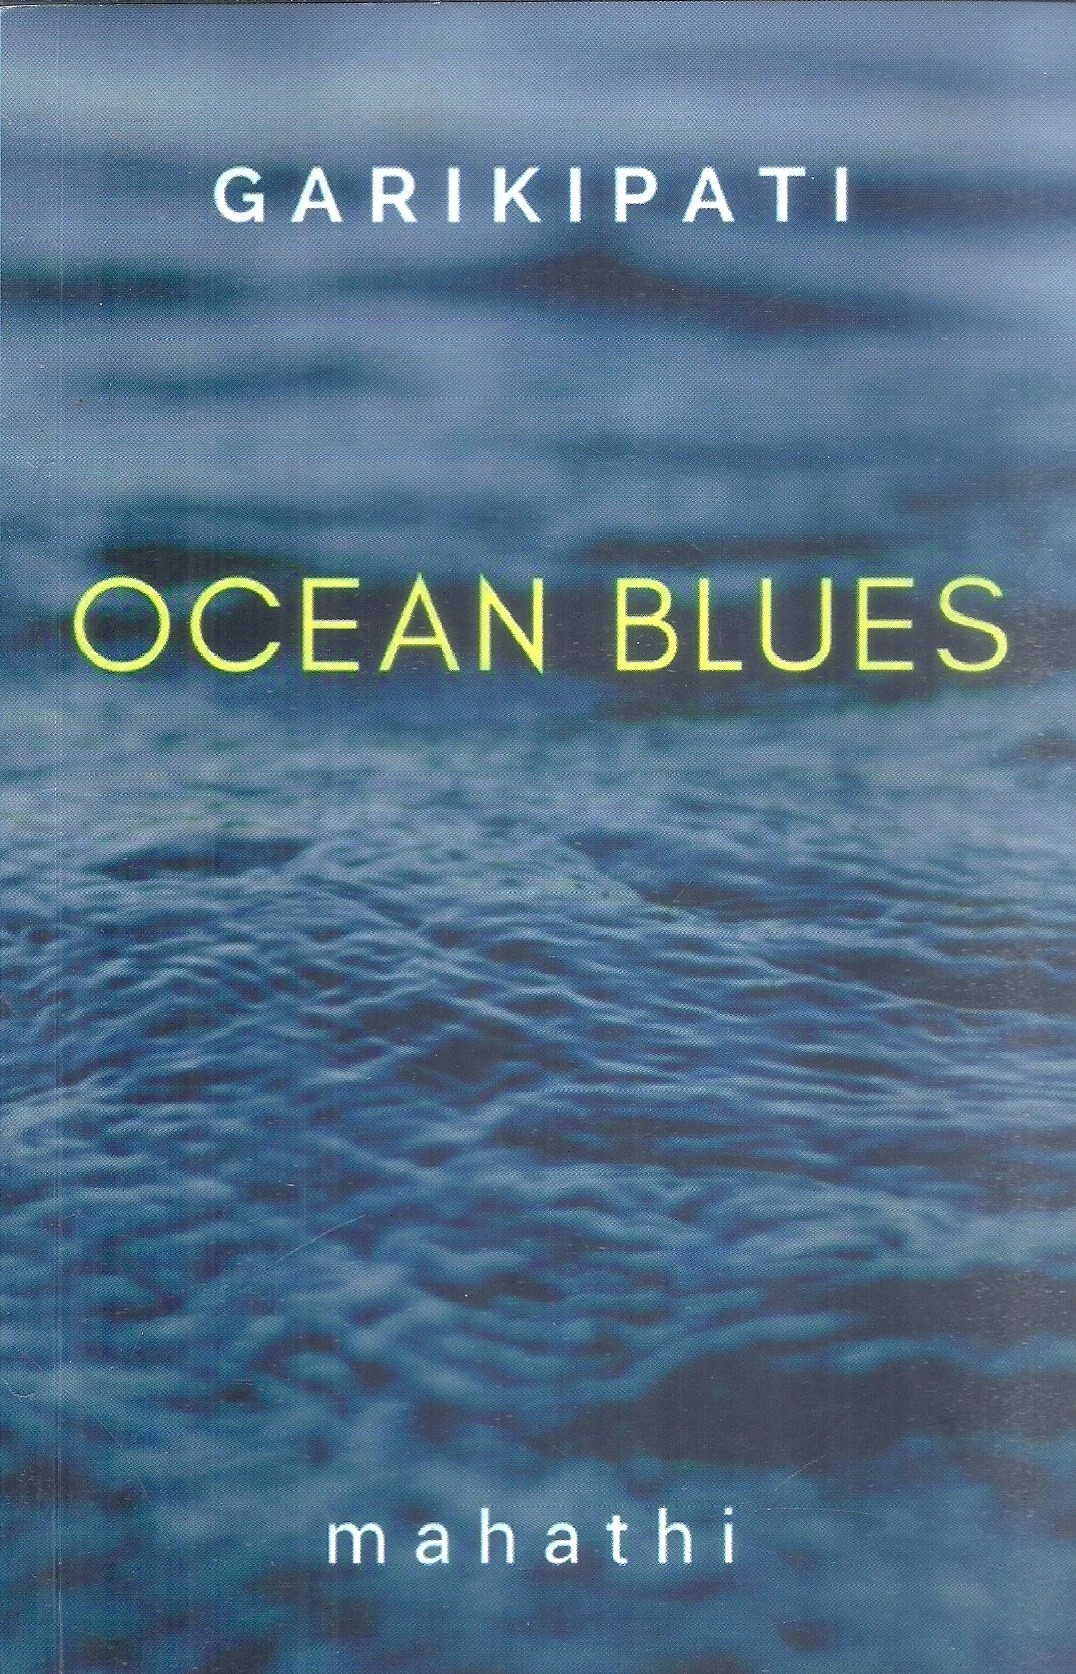 garikipati-ocean-blues-mahathi